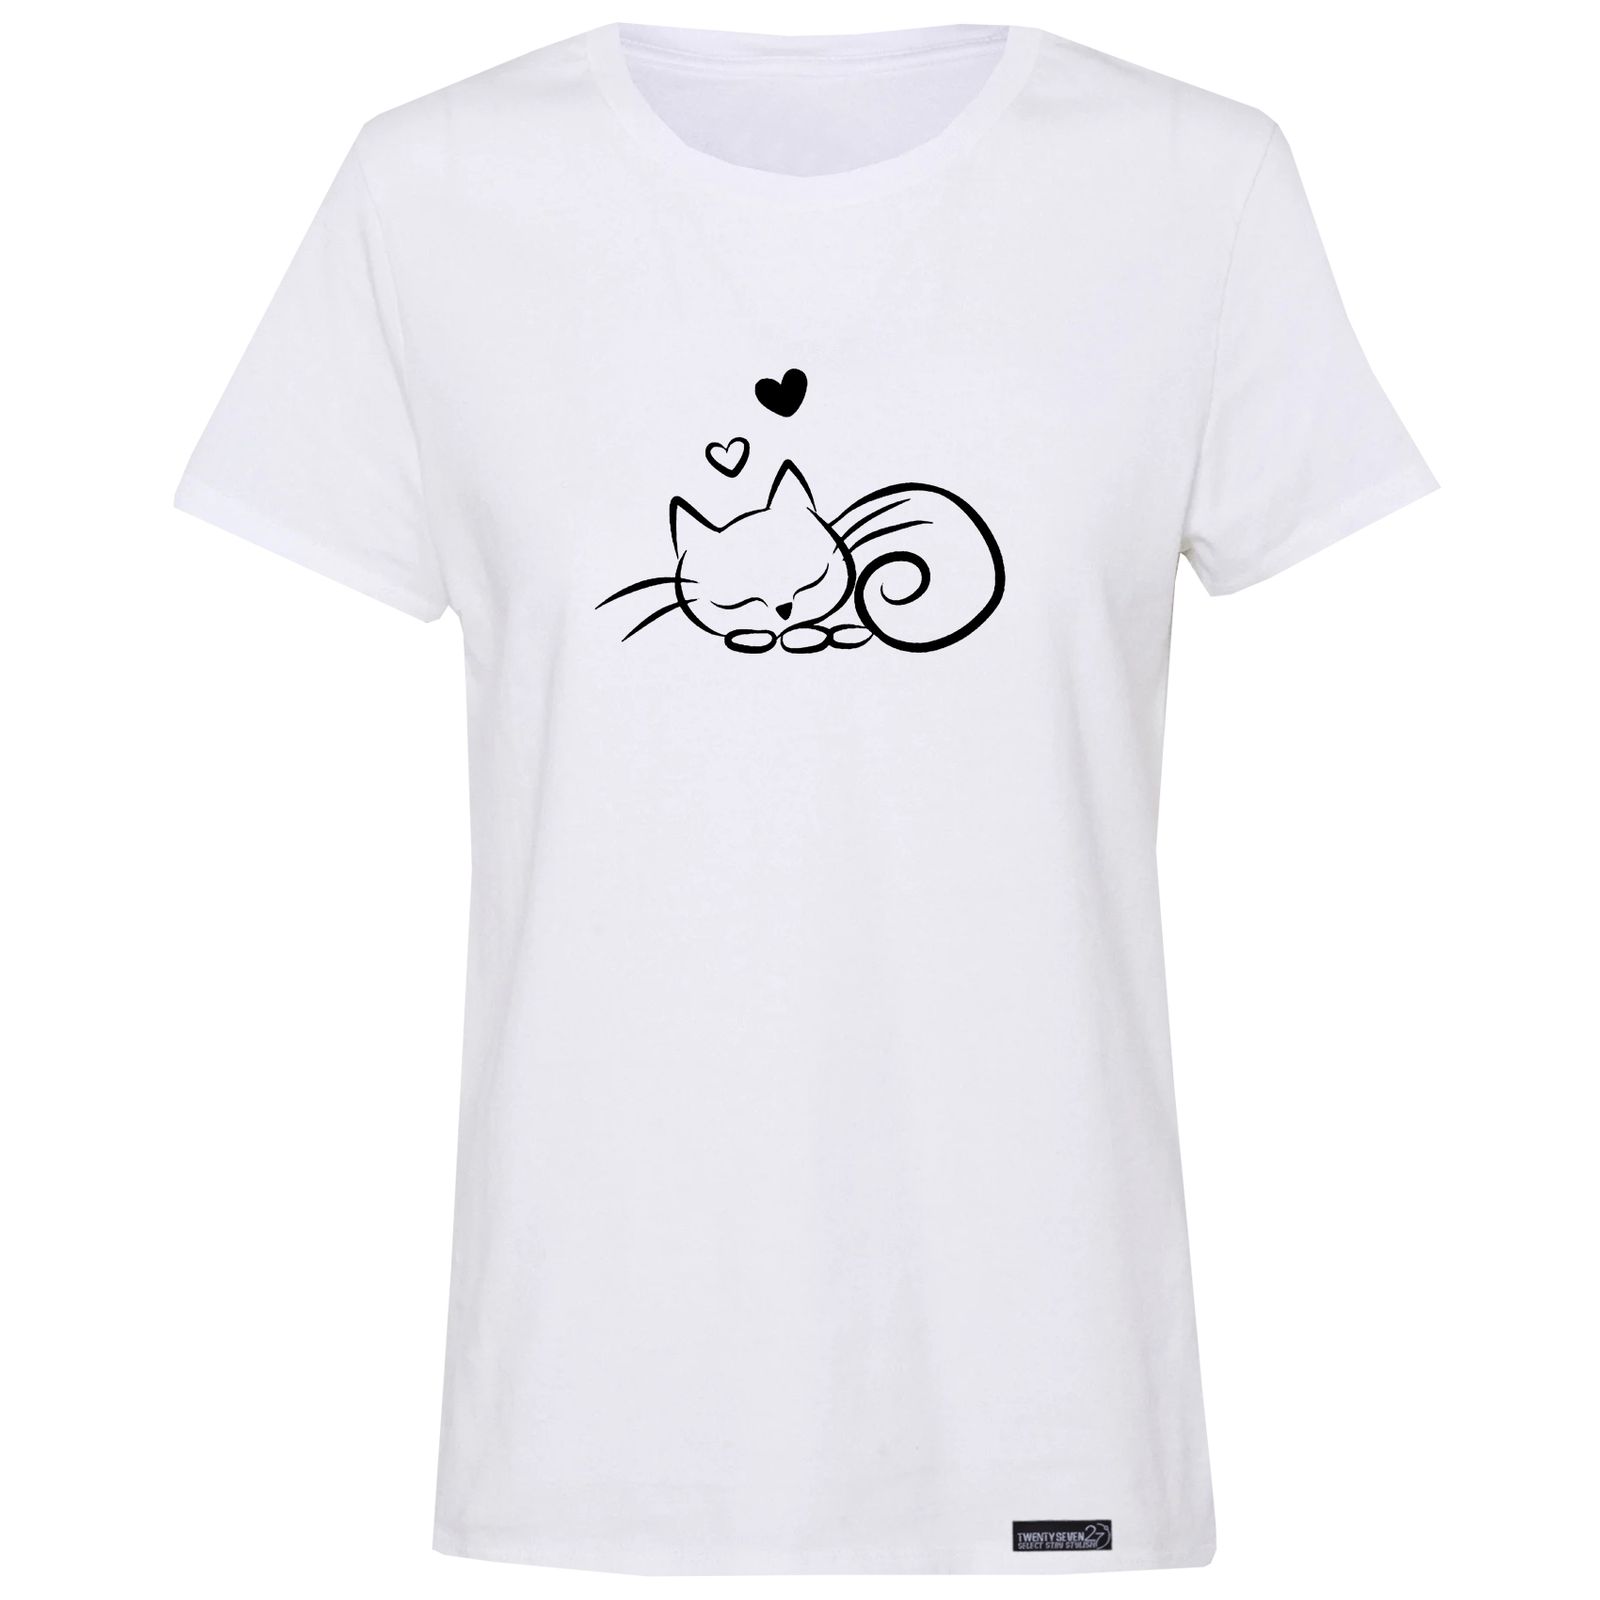 تی شرت آستین کوتاه زنانه 27 مدل گربه کد RN550 -  - 1